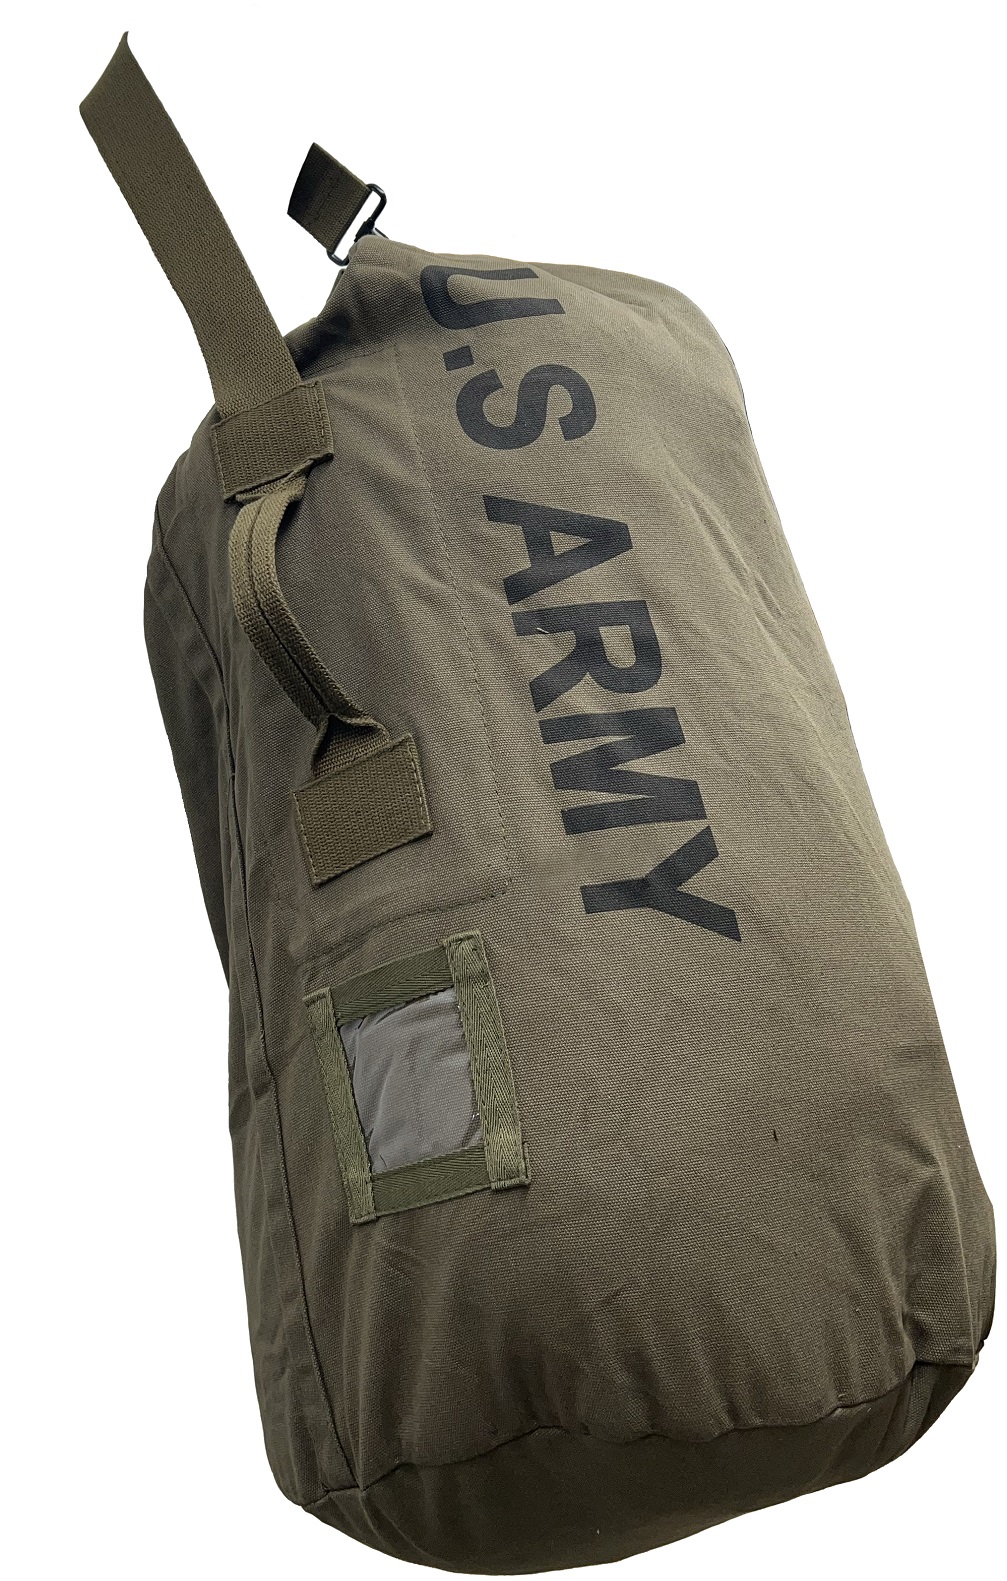 U.S. ARMY DUFFLE BAG